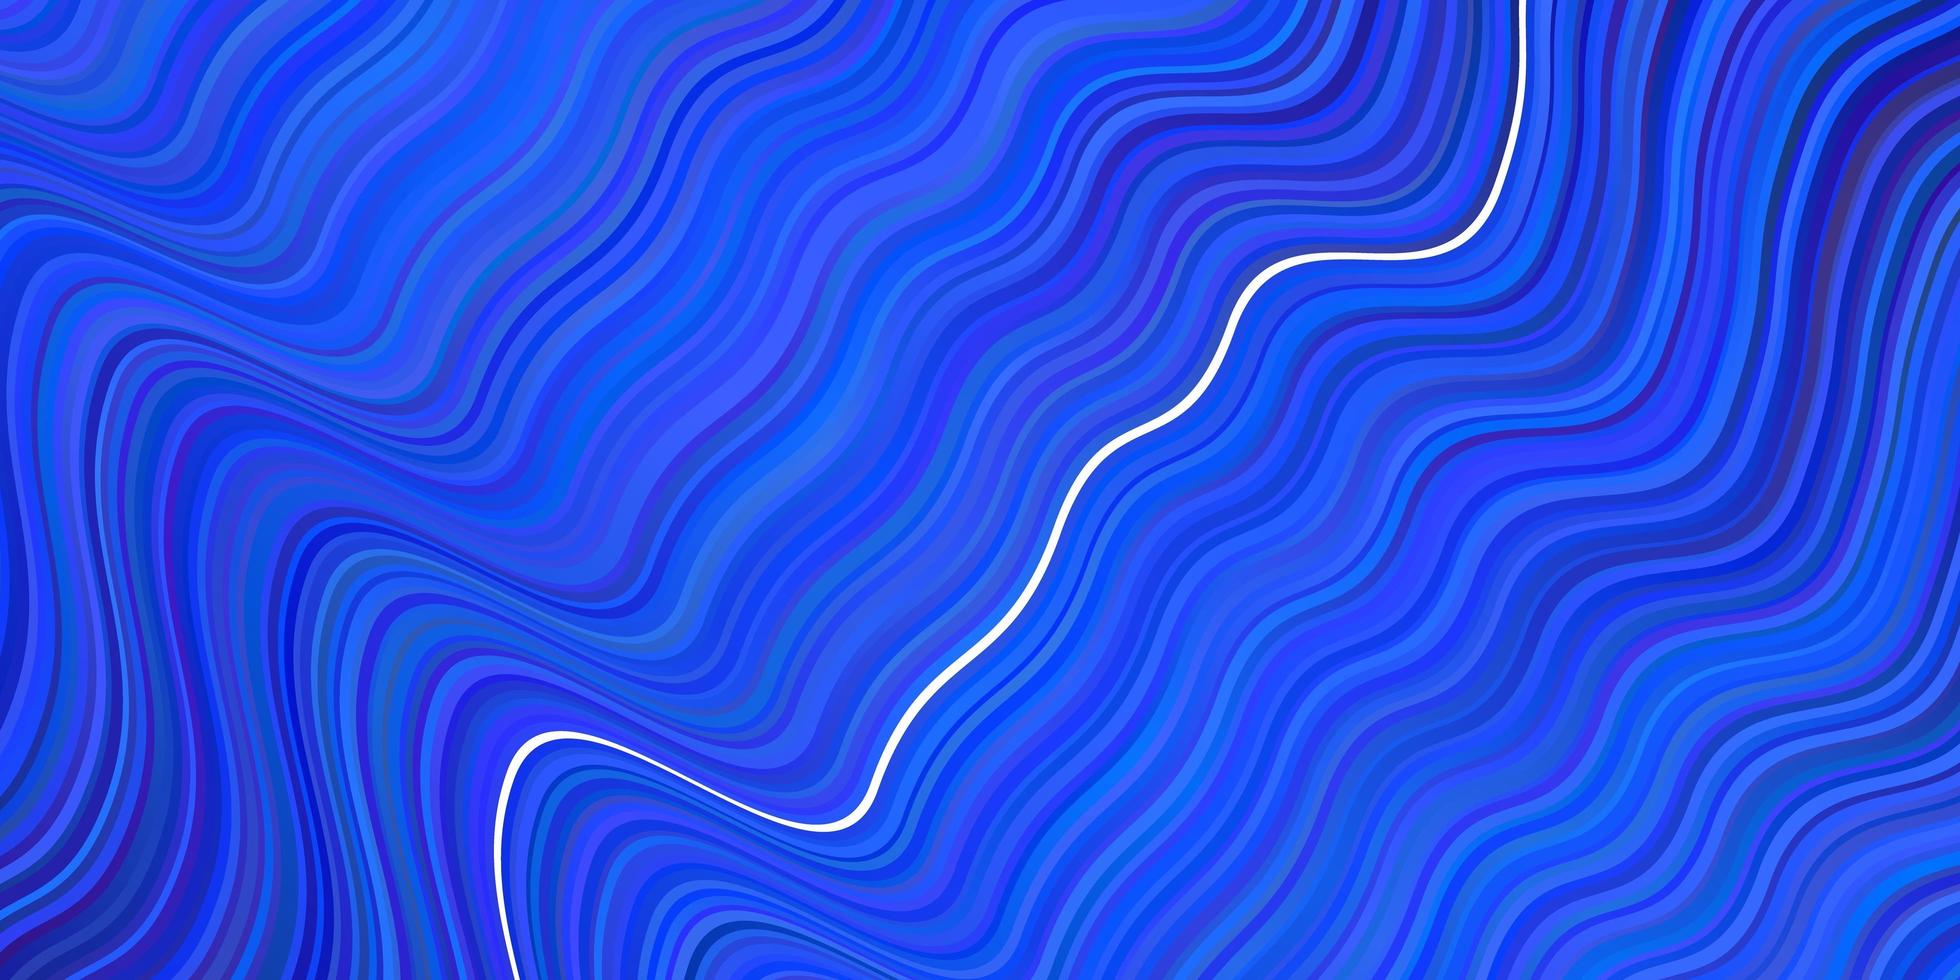 modello vettoriale azzurro con linee piegate.